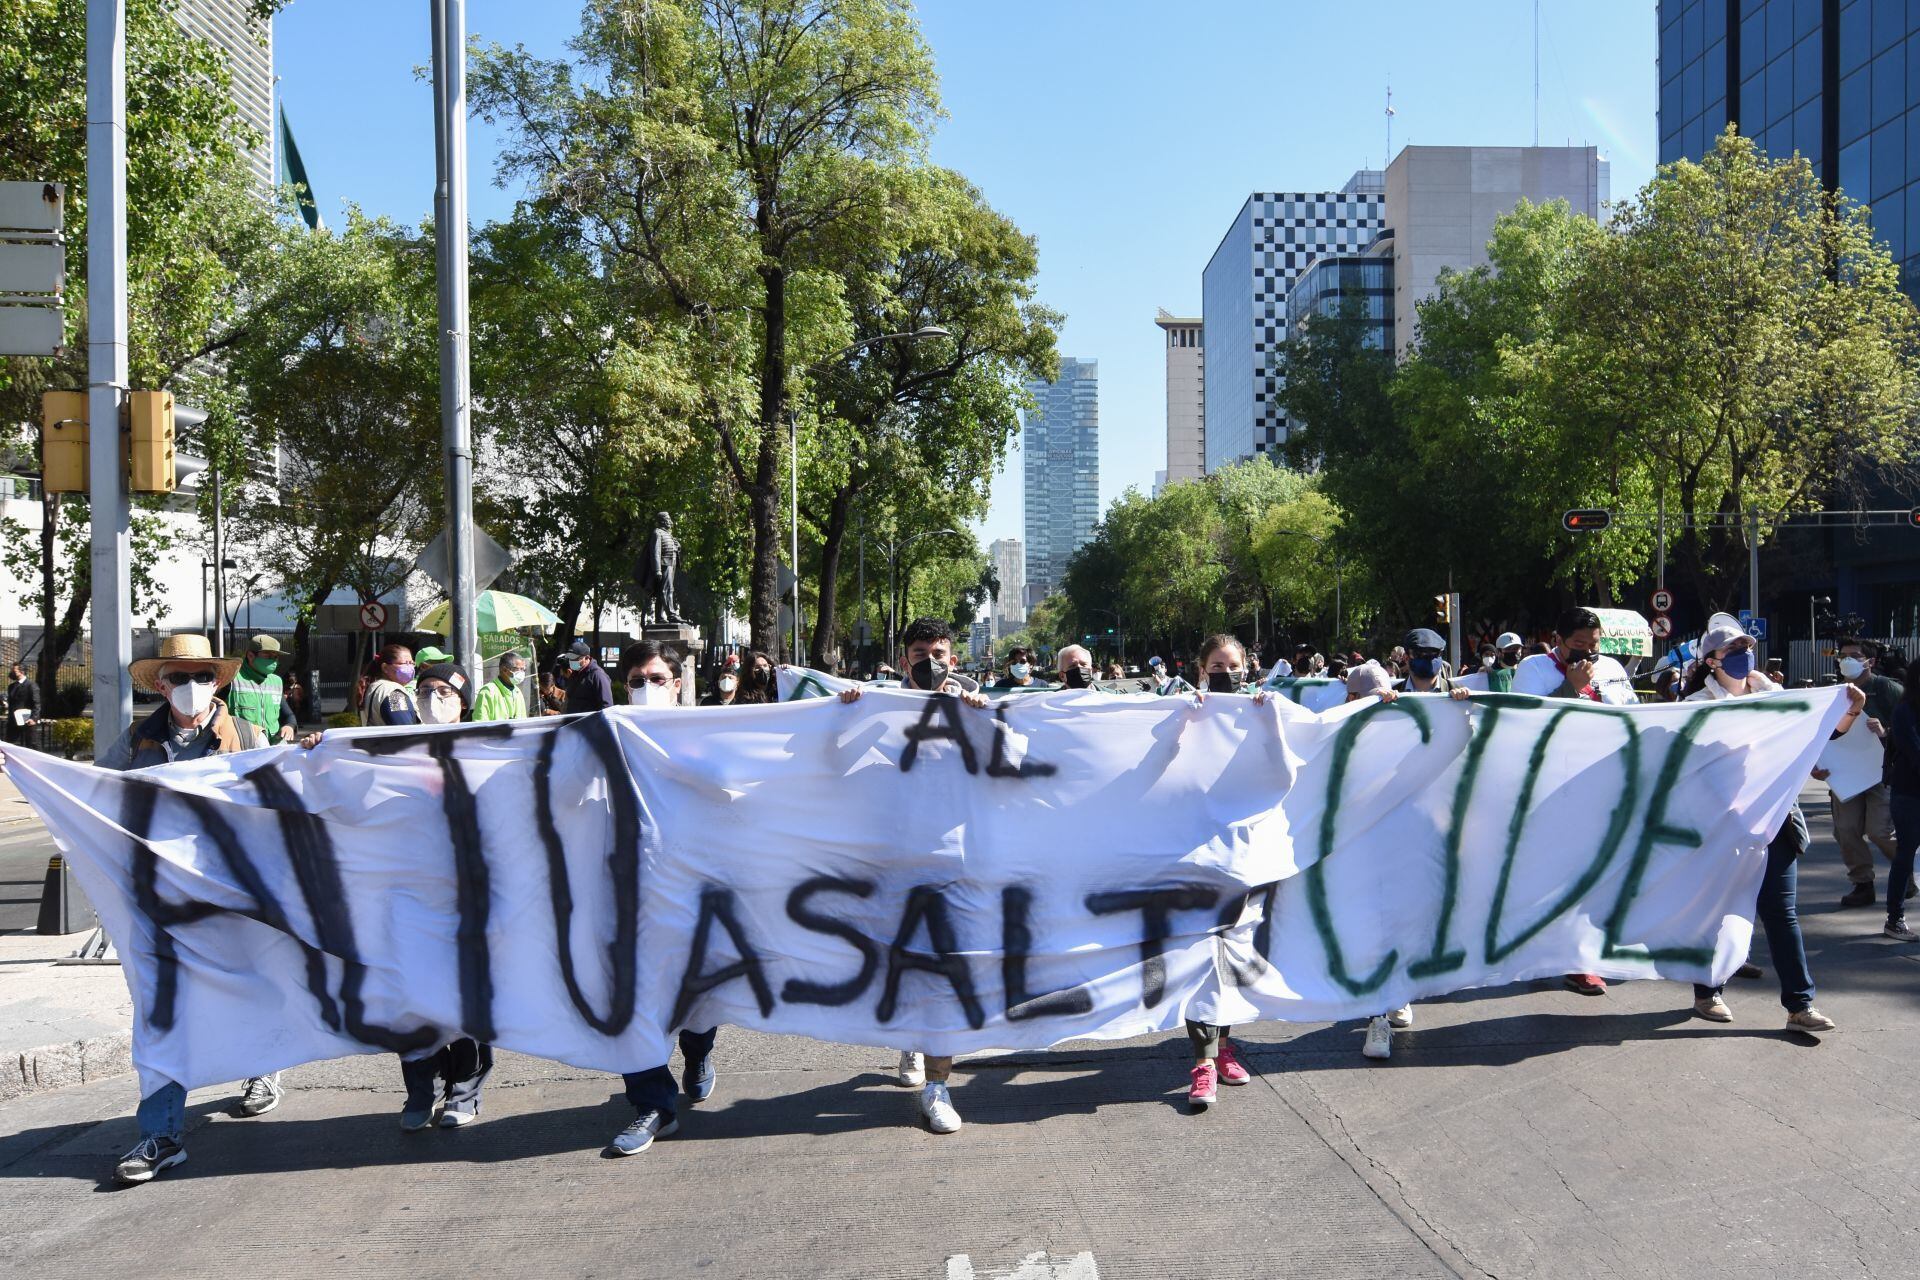 Estudiantes del CIDE van a Palacio Nacional y piden a AMLO destitución de Romero Tellaeche